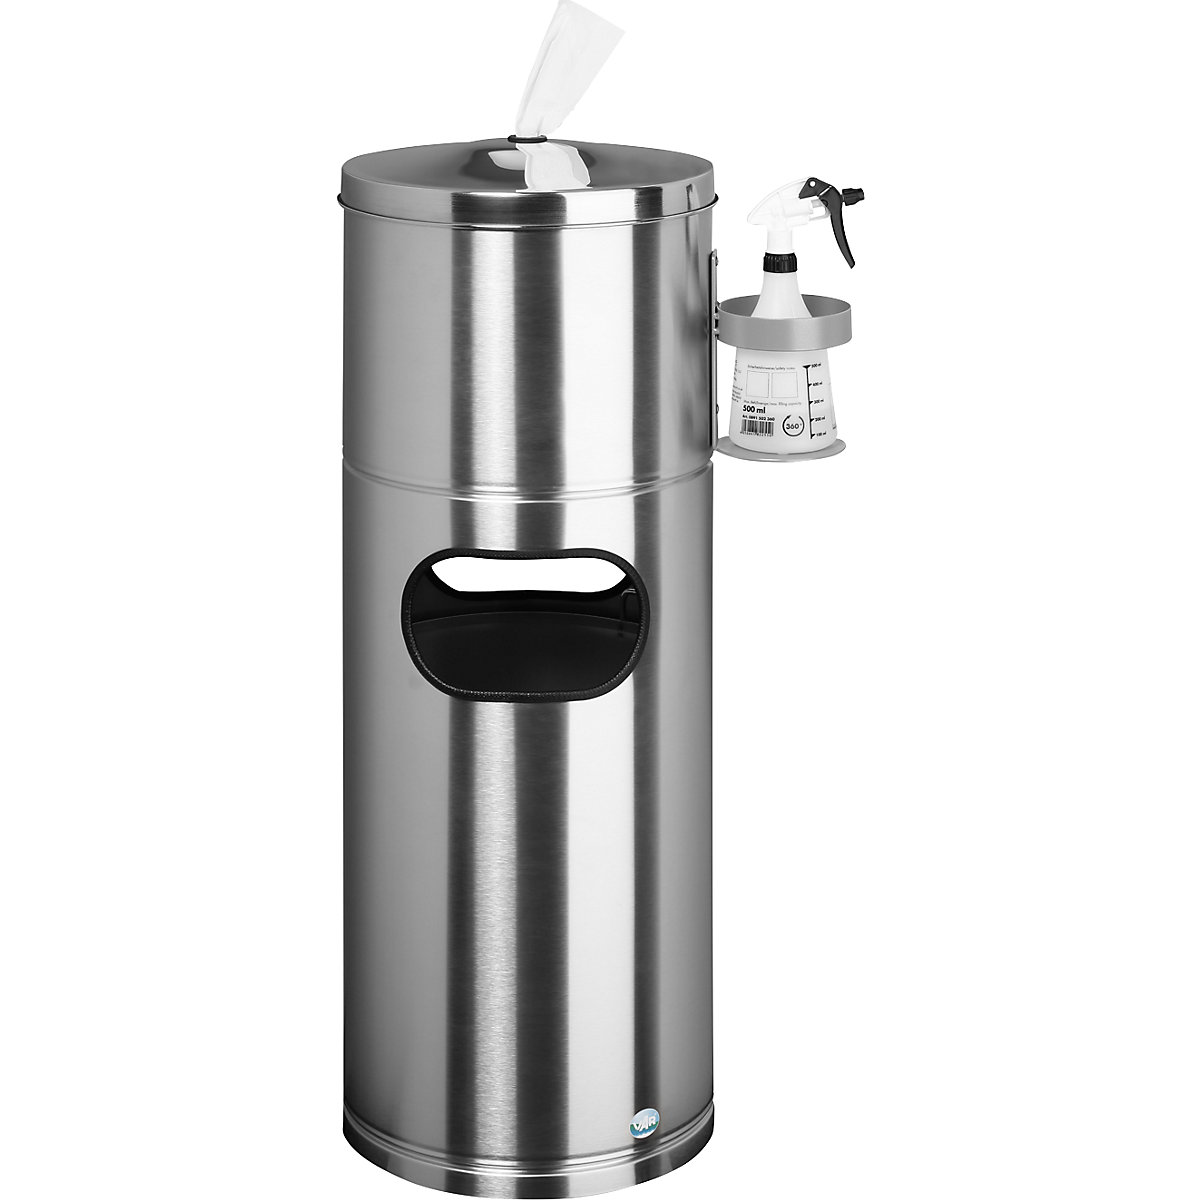 Postazione di pulizia – VAR, con dispenser per salviette e supporto per flacone, acciaio inox-5